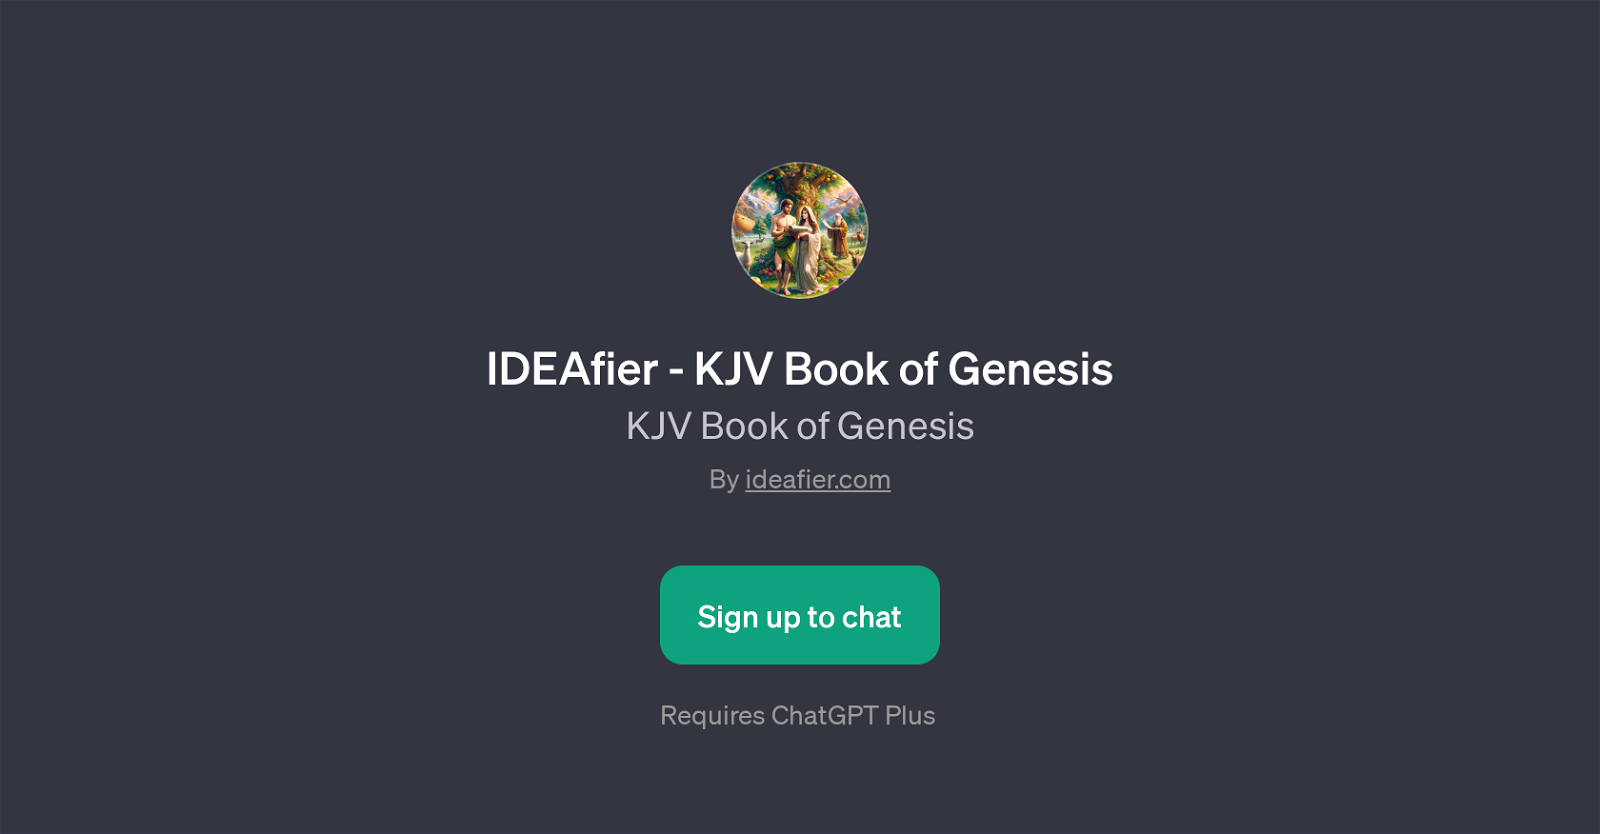 IDEAfier - KJV Book of Genesis website